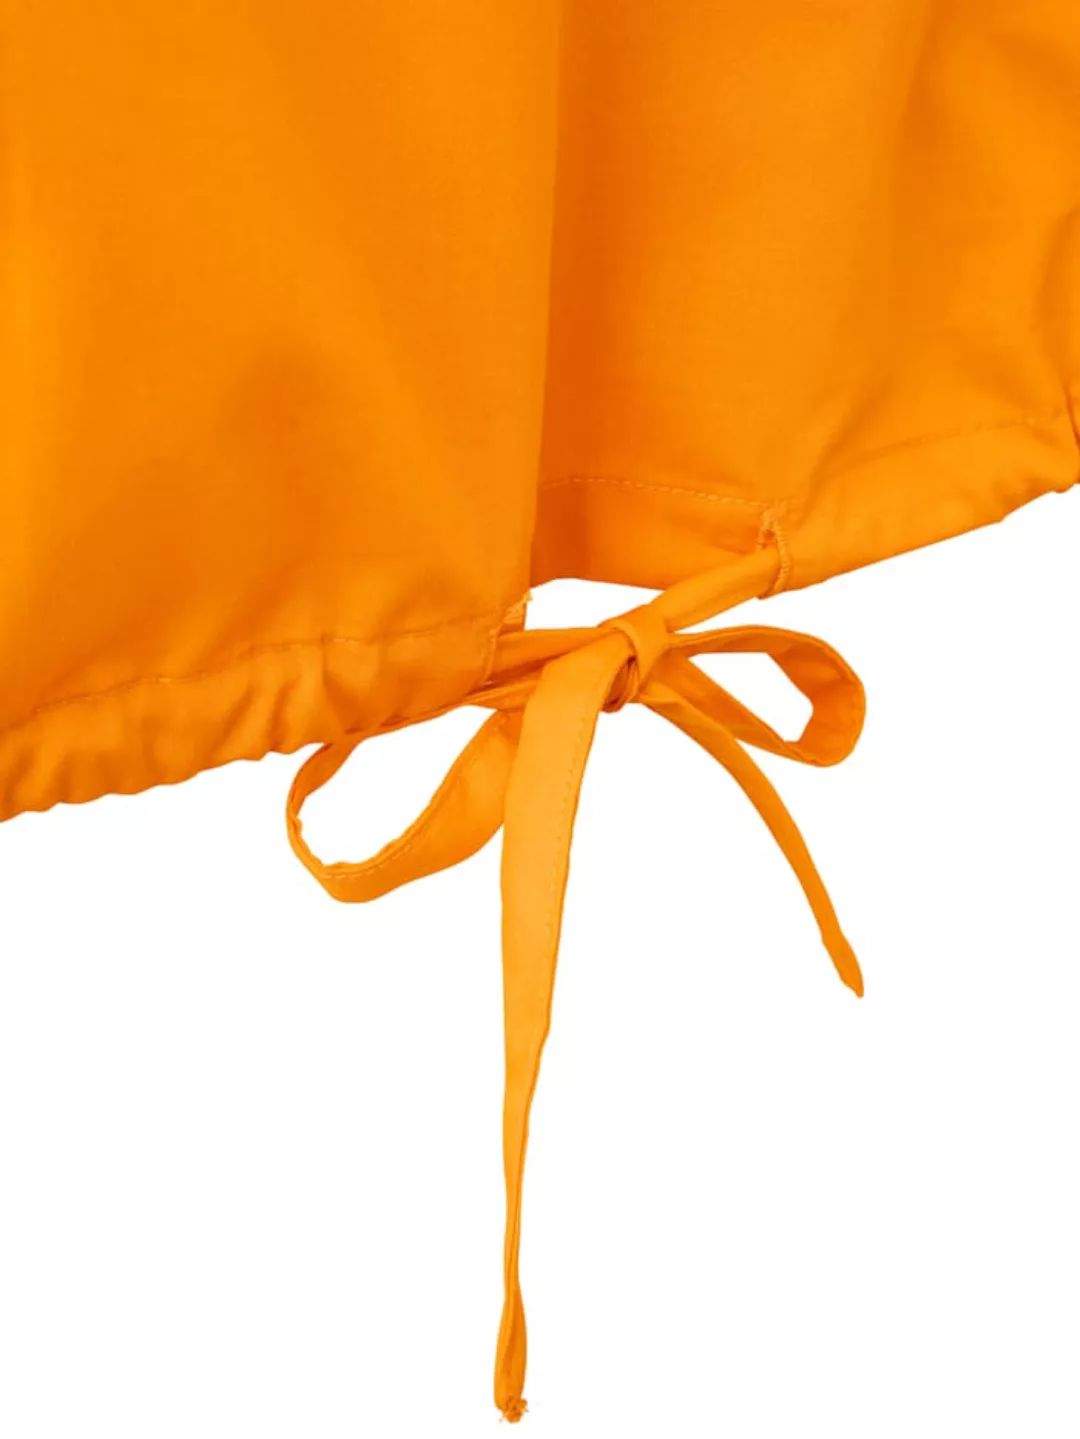 Bluse ROCKGEWITTER Orange günstig online kaufen